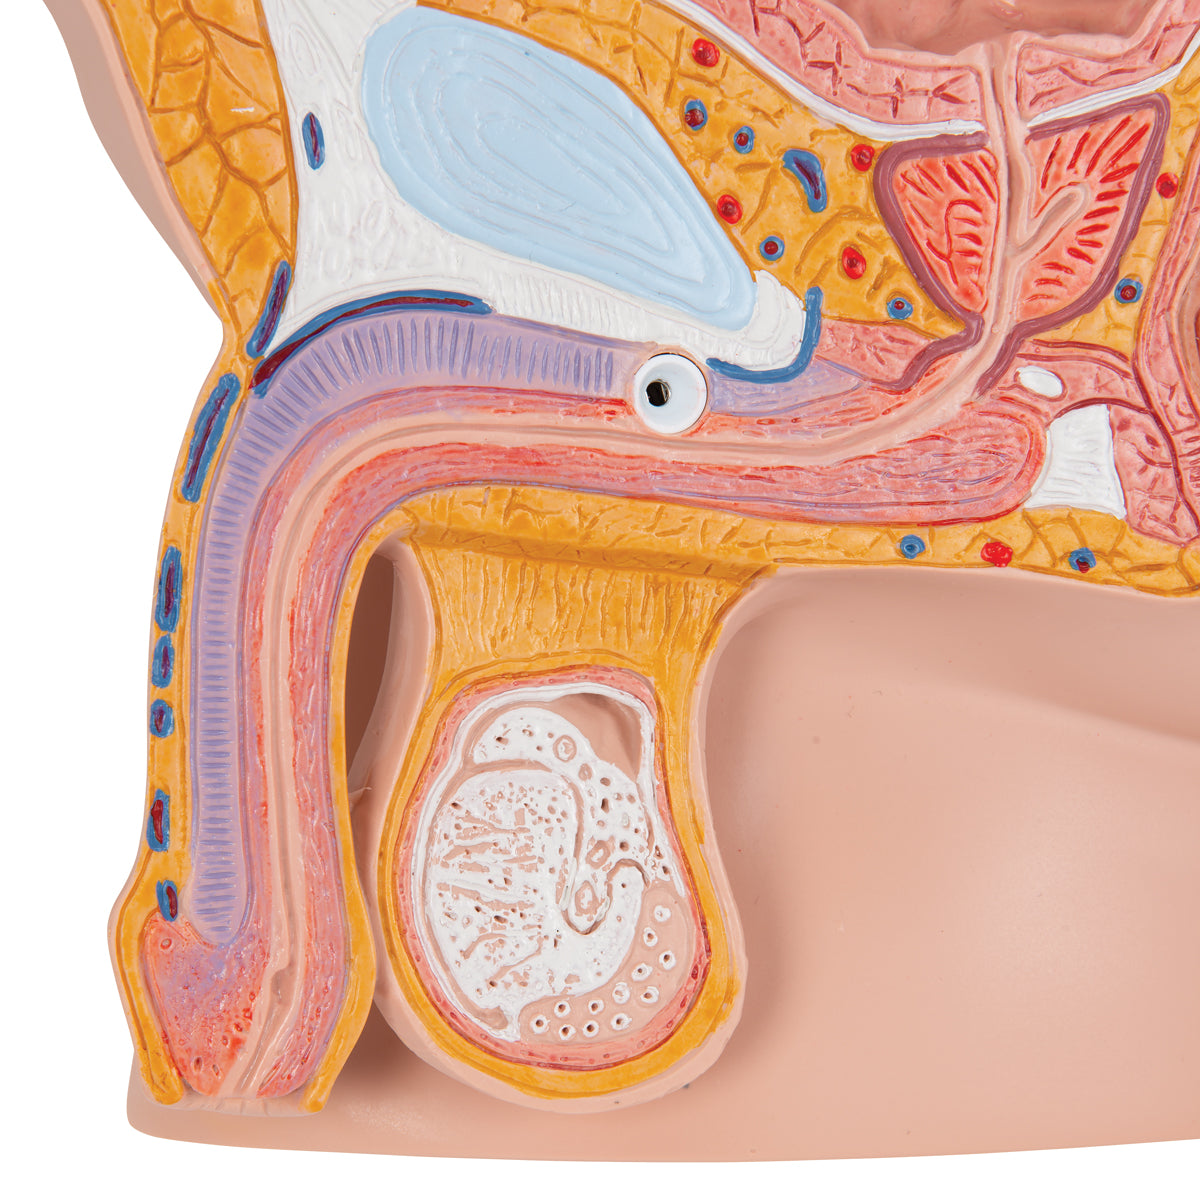 Model of the male pelvis seen in a median section